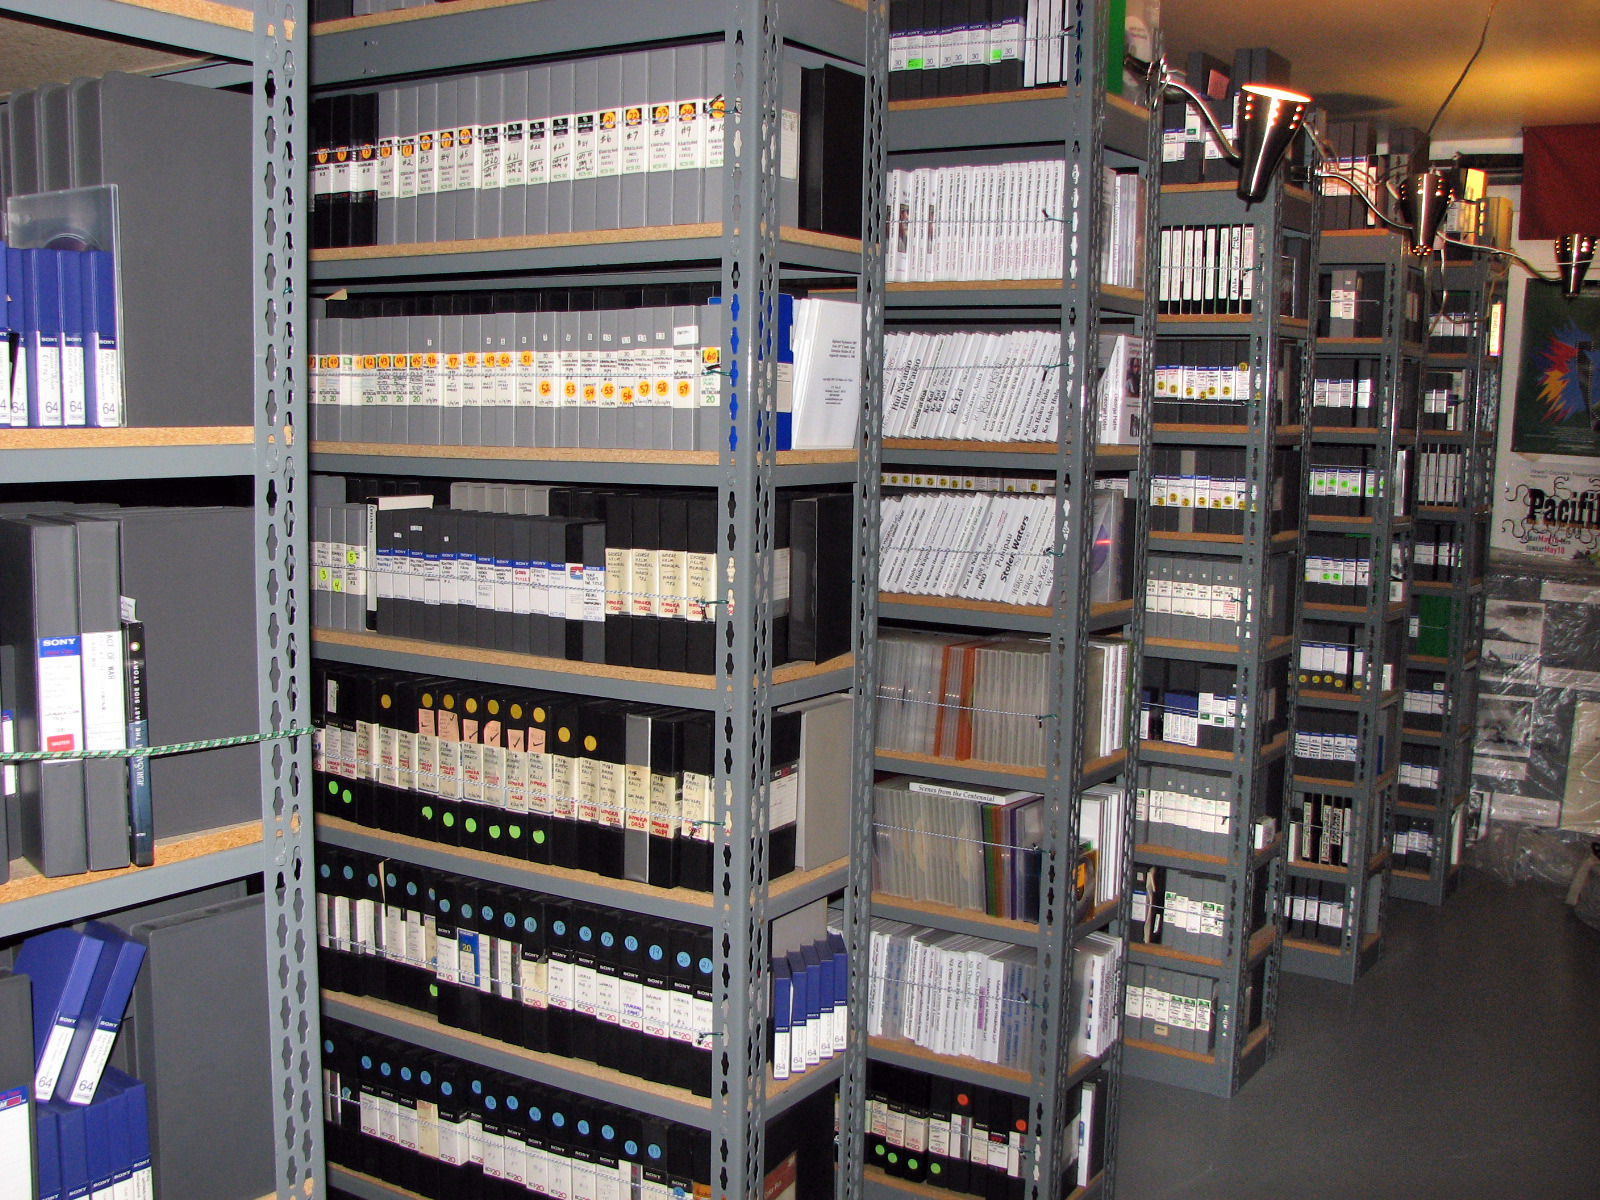 The Nā Maka o ka ʻĀina videotape library has shelves of storage containing tapes. Courtesy of Nā Maka o ka ʻĀina